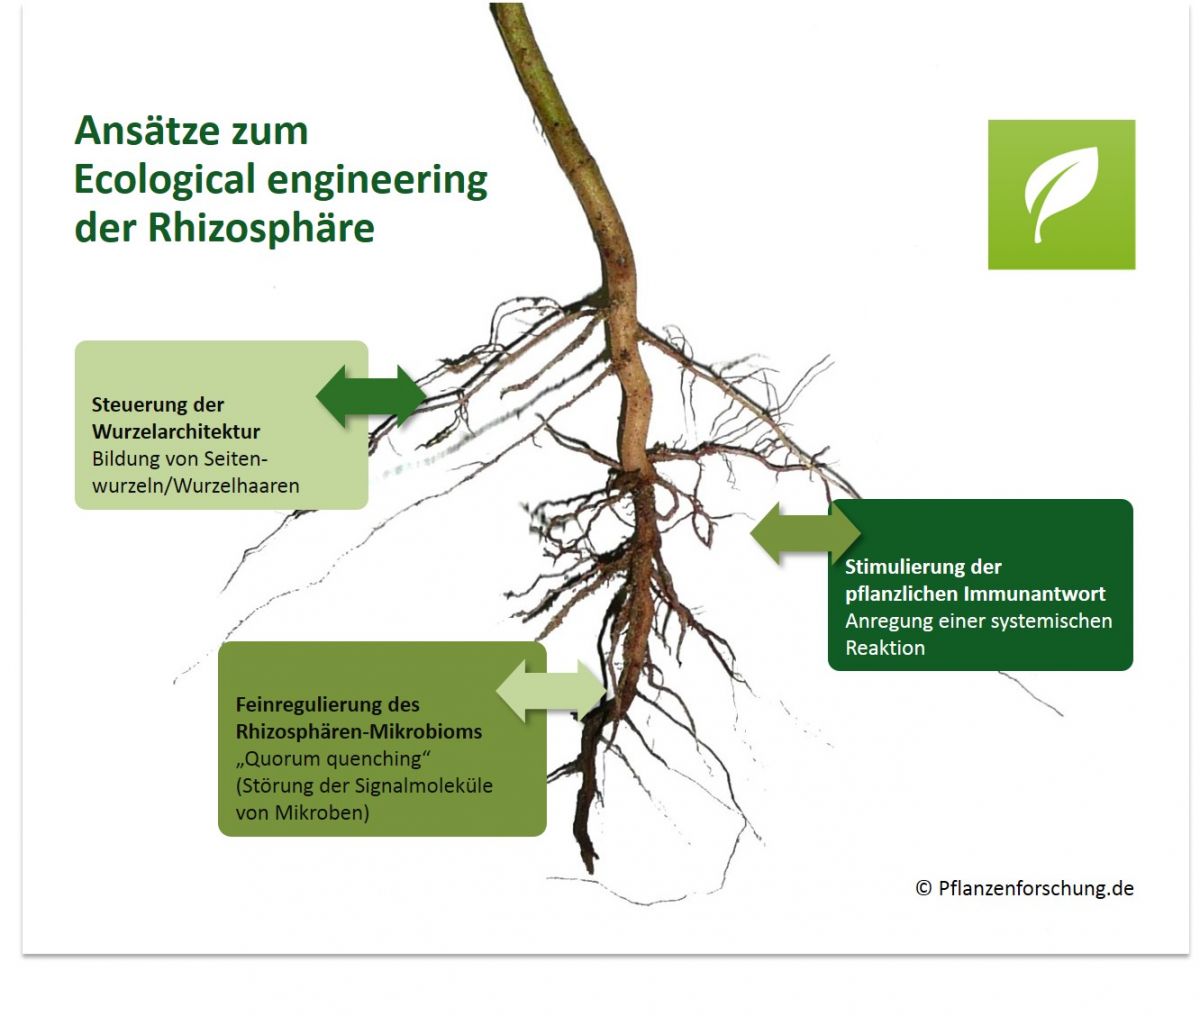 Übersicht einiger wichtiger Ansätze zum „Ecological engineering“ der Rhizosphäre, um das Pflanzenwachstum zu fördern. (Grafik: © Pflanzenforschung.de)